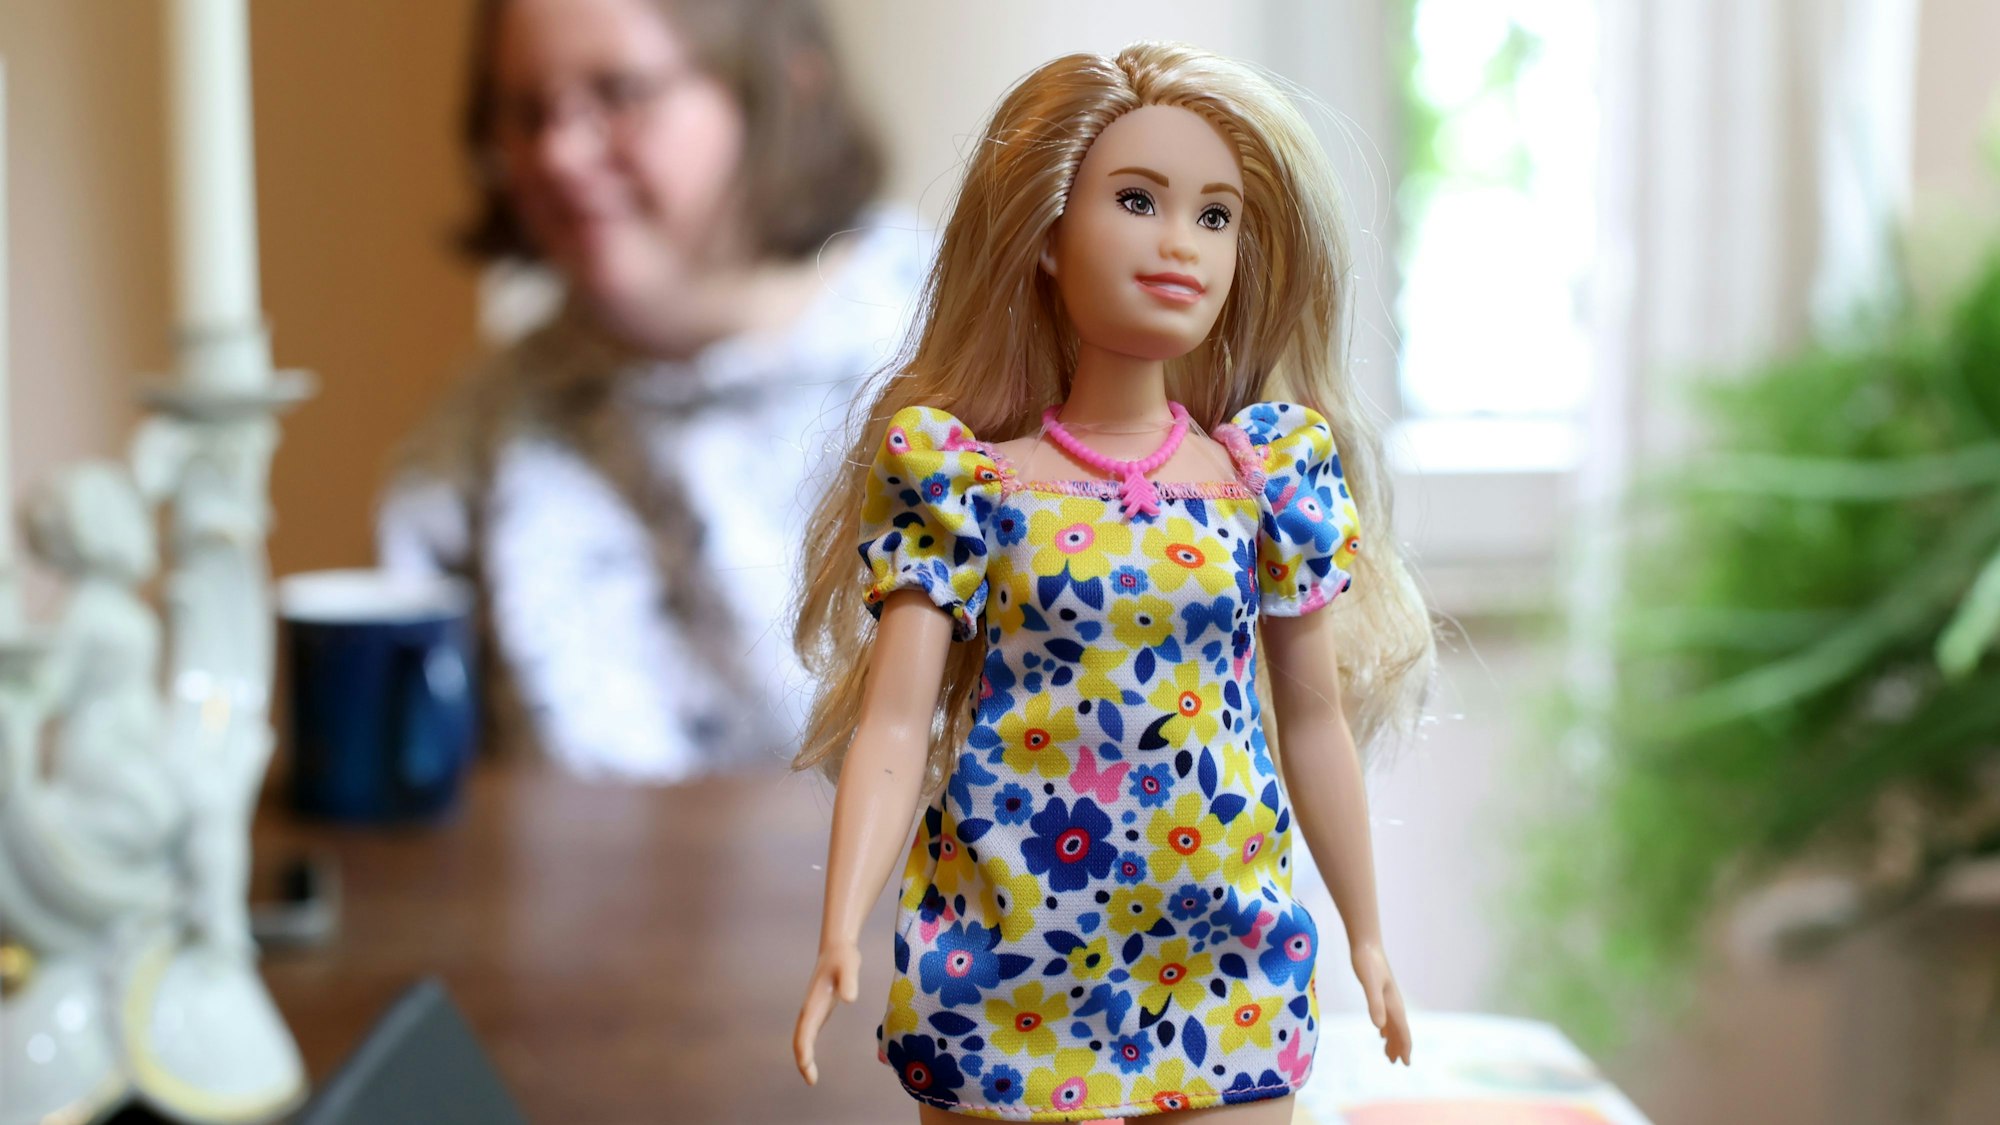 Das Bild zeigt die erste Barbie mit Down-Syndrom. Sie hat blonde, lange Haate, trägt ein Kleid mit blauen und gelben Blumen und eine rosafarbene Kette.